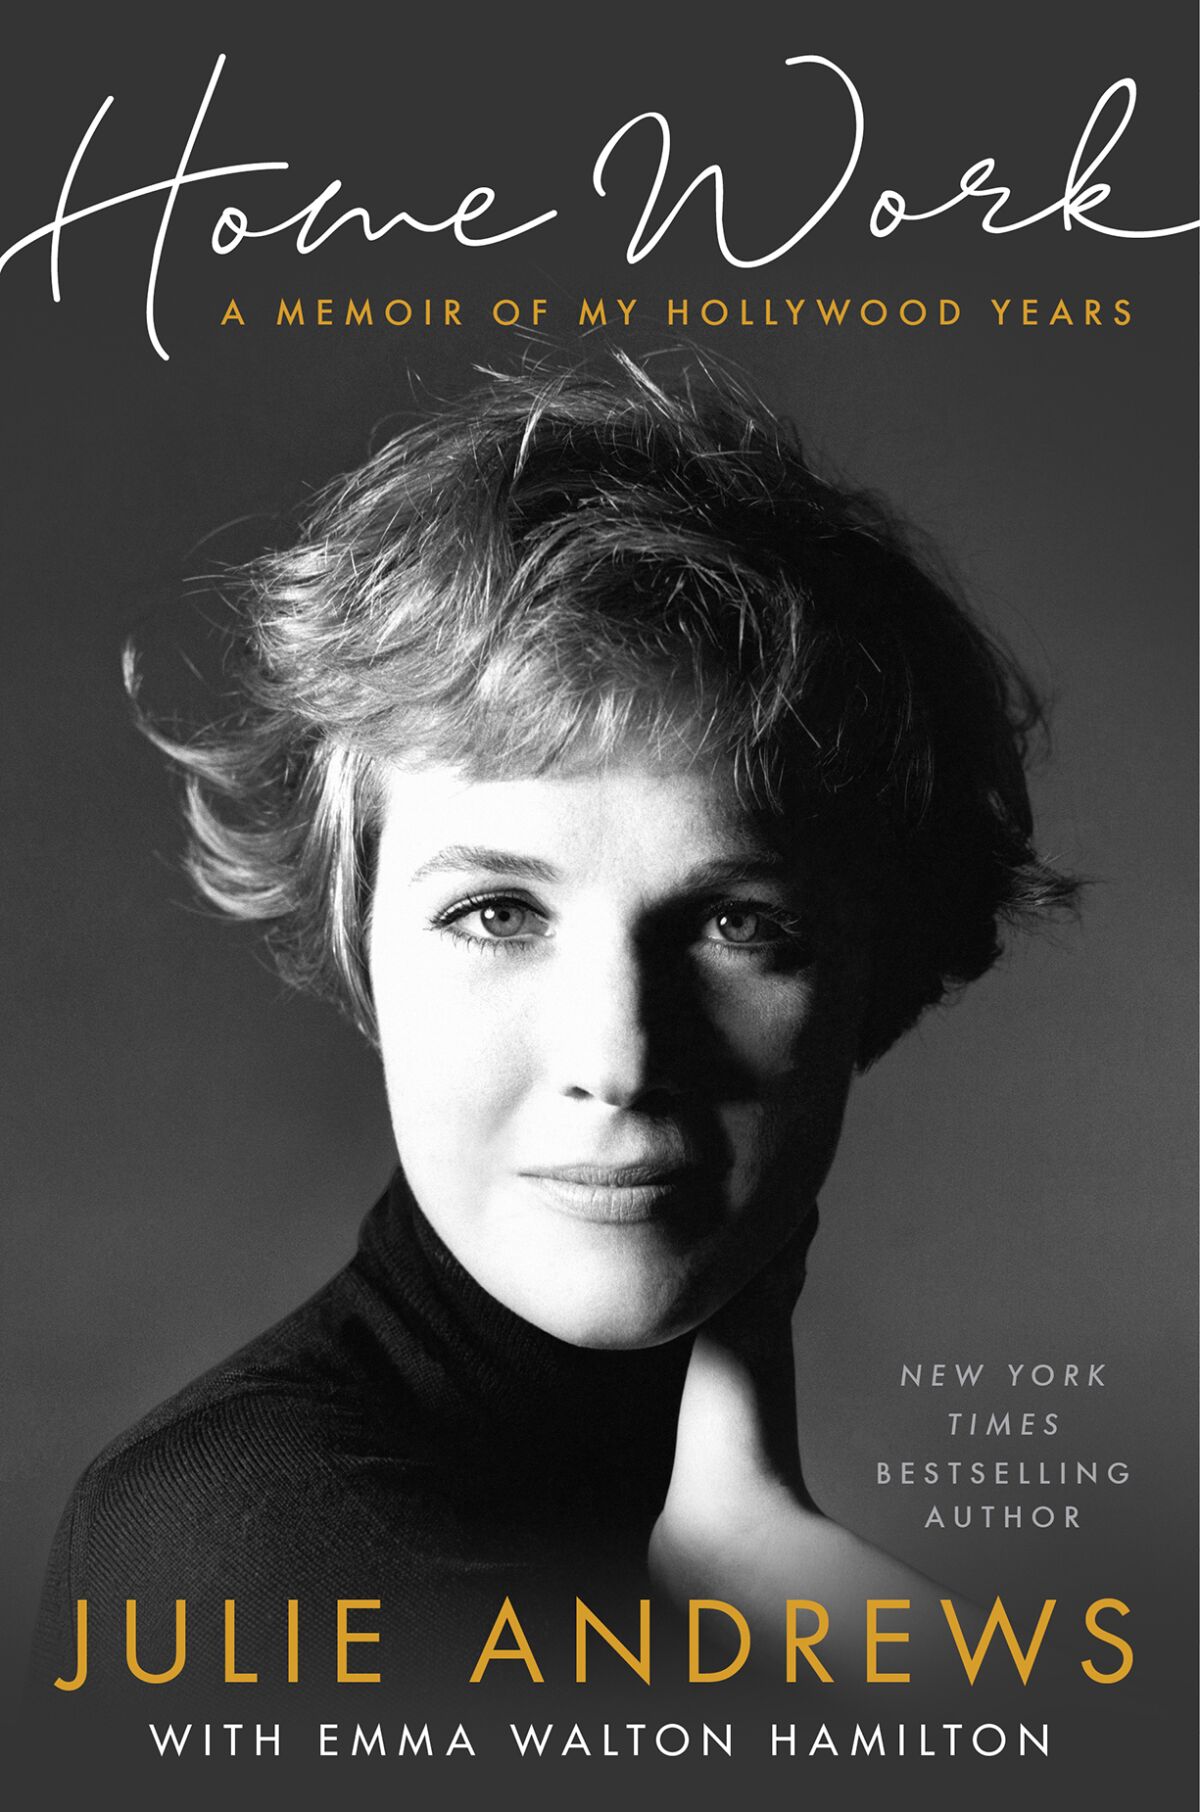 Julie Andrews' "Home Work: A Memoir of My Hollywood Years"